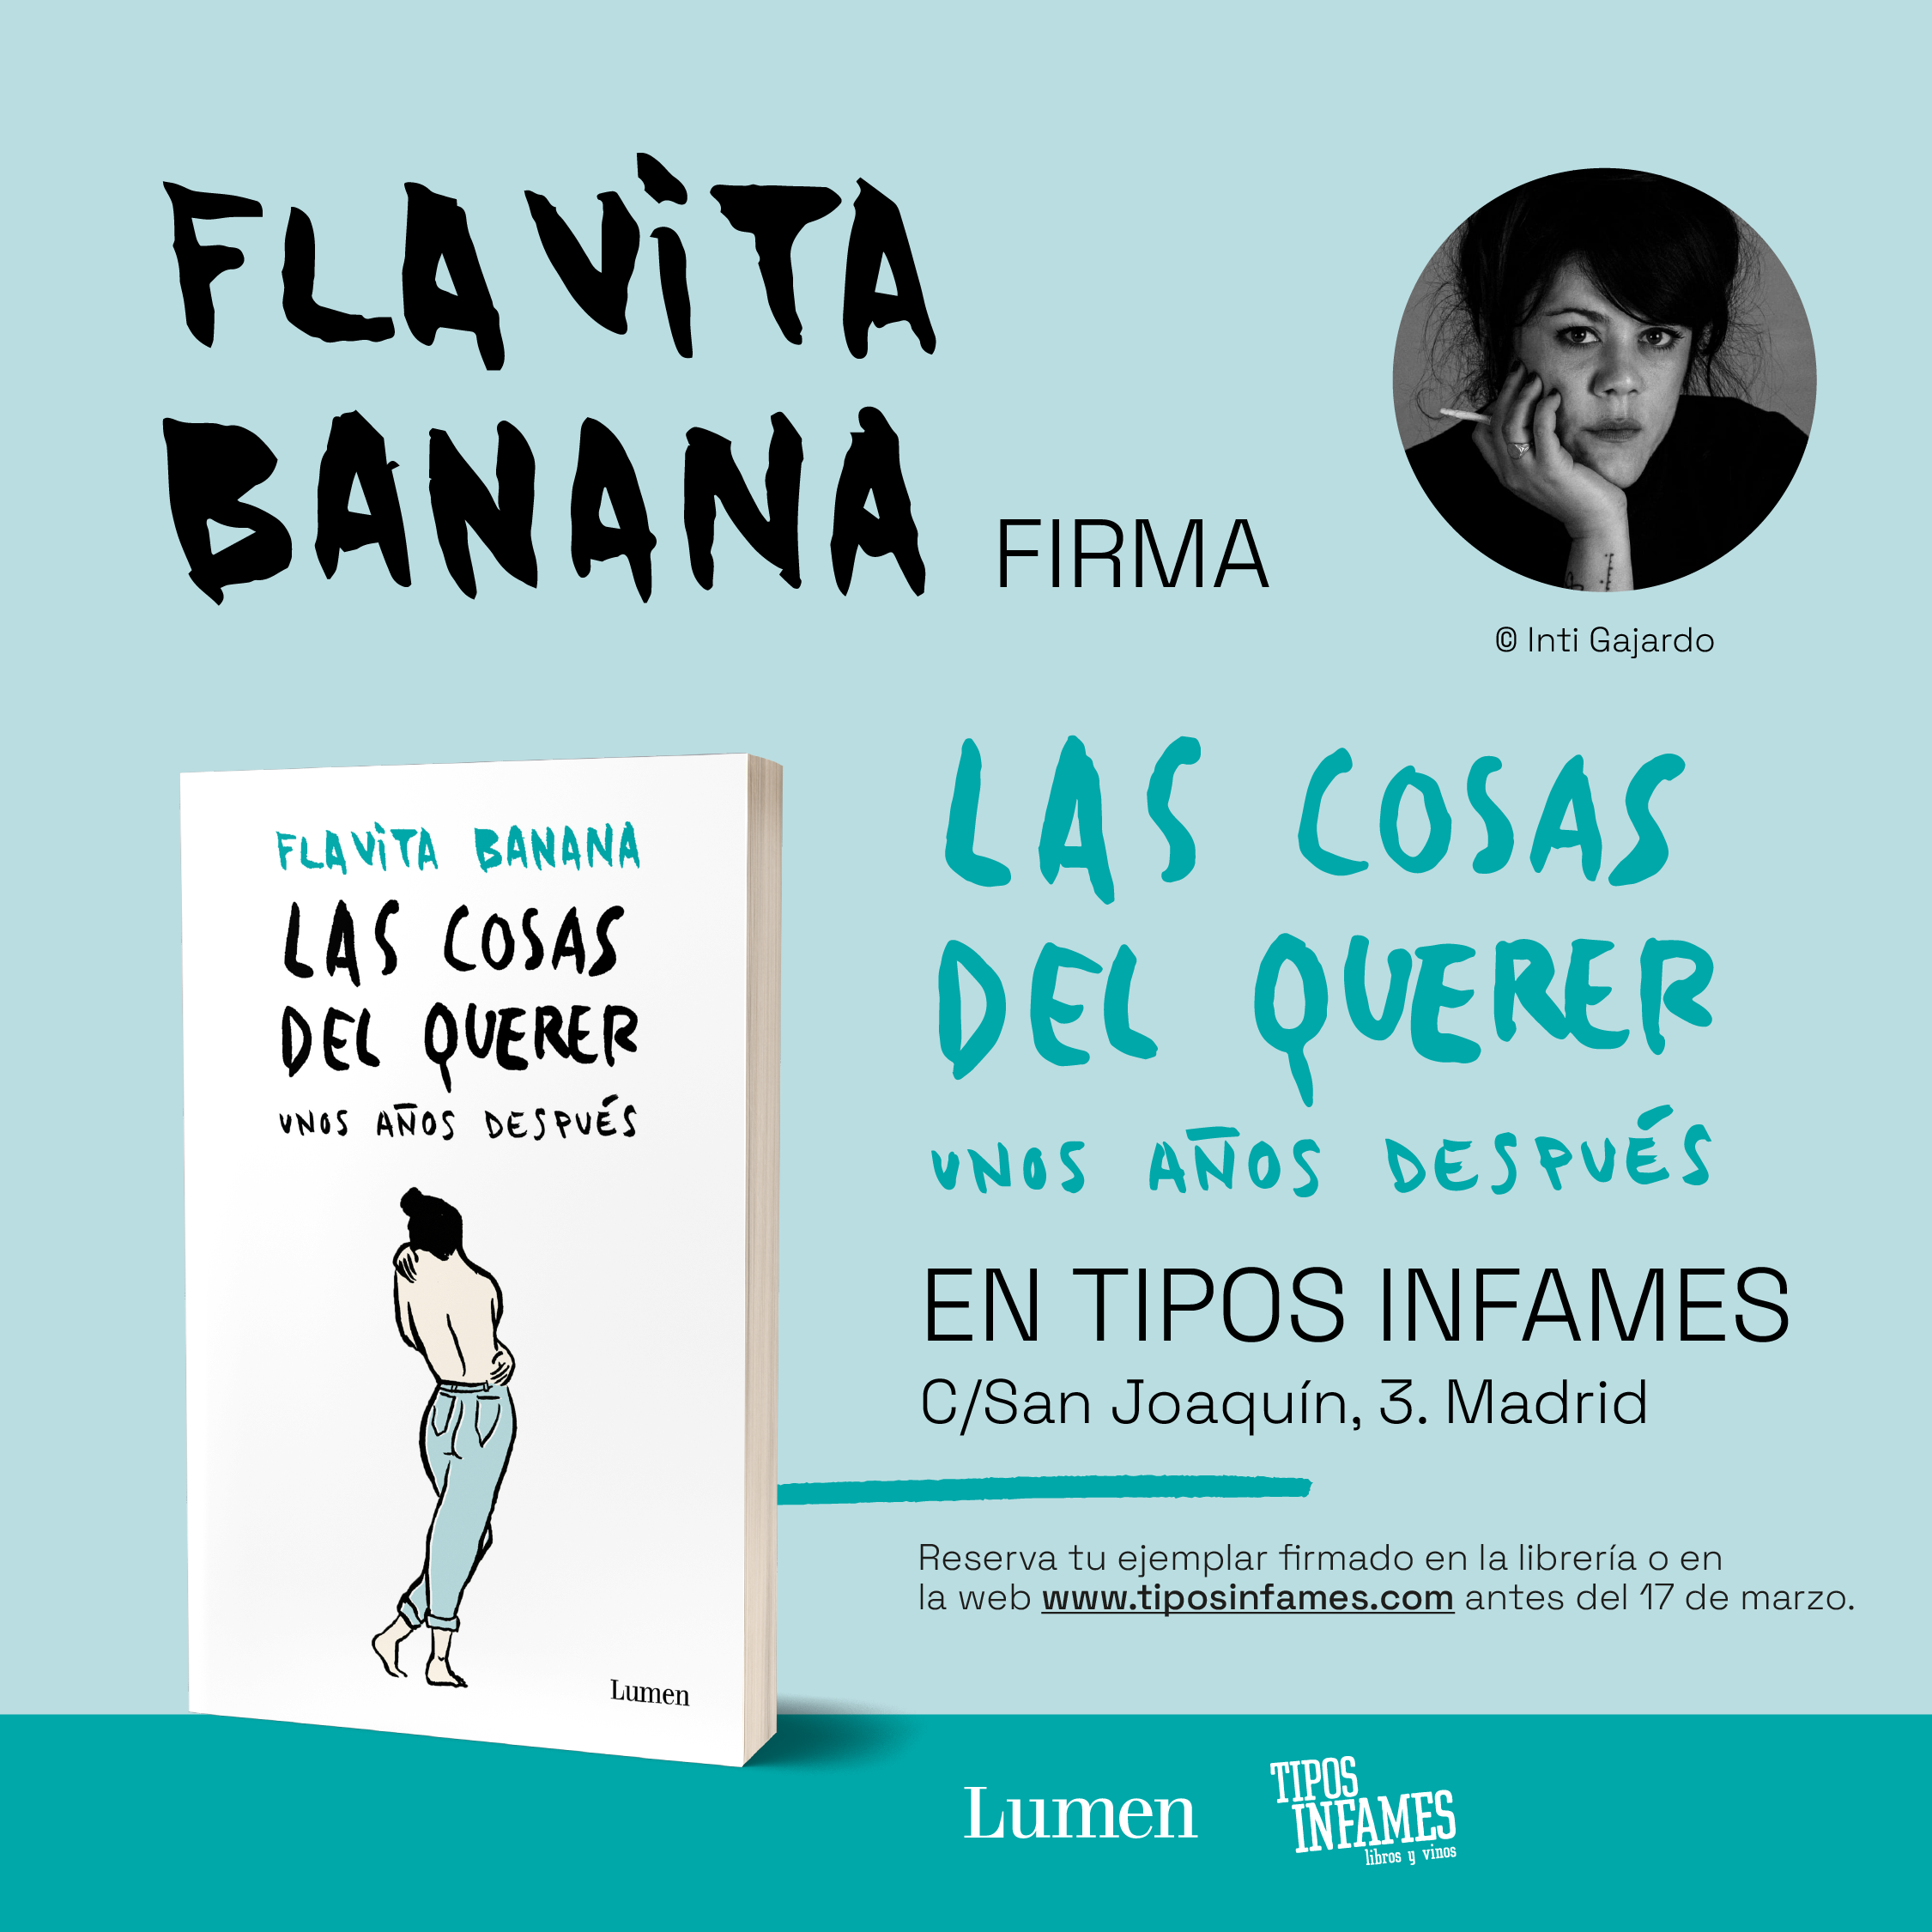 Flavita Banana firma ejemplares de su último libro